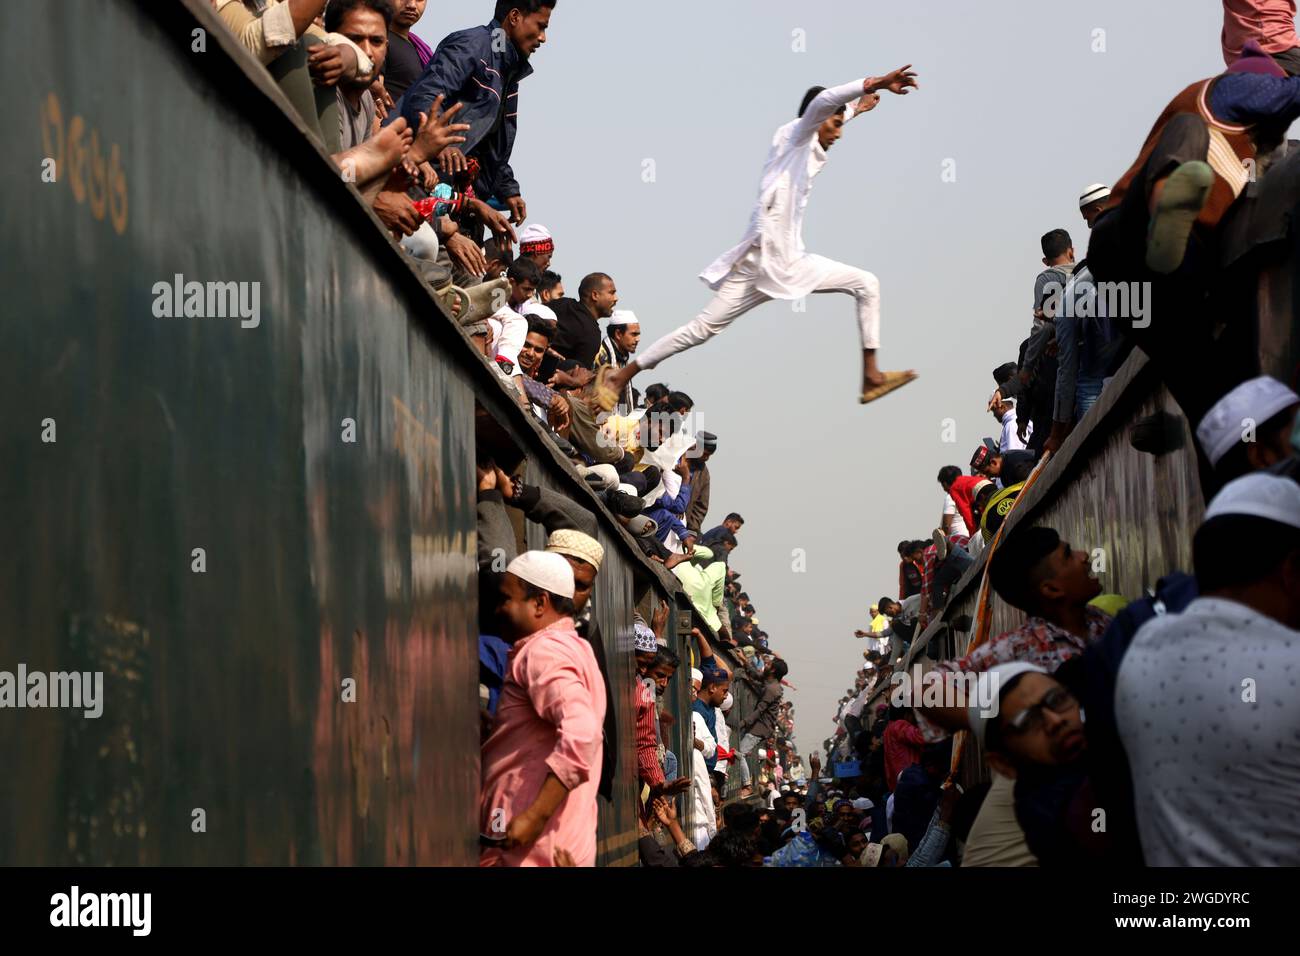 Tongi, Gazipur, Bangladesch. Februar 2024. Ein Anhänger von Bishwa Ijtema springt von einem Zug zum anderen, um am Bahnhof Tongi in Gazipur den richtigen Zug zu erreichen. Bishwa Ijtema (Welt Ijtema) ist die zweitgrößte muslimische Versammlung der Welt. Jedes Jahr nehmen Millionen Menschen aus dem ganzen Land und dem Ausland an Ijtema Teil. (Kreditbild: © Syed Mahabubul Kader/ZUMA Press Wire) NUR REDAKTIONELLE VERWENDUNG! Nicht für kommerzielle ZWECKE! Stockfoto